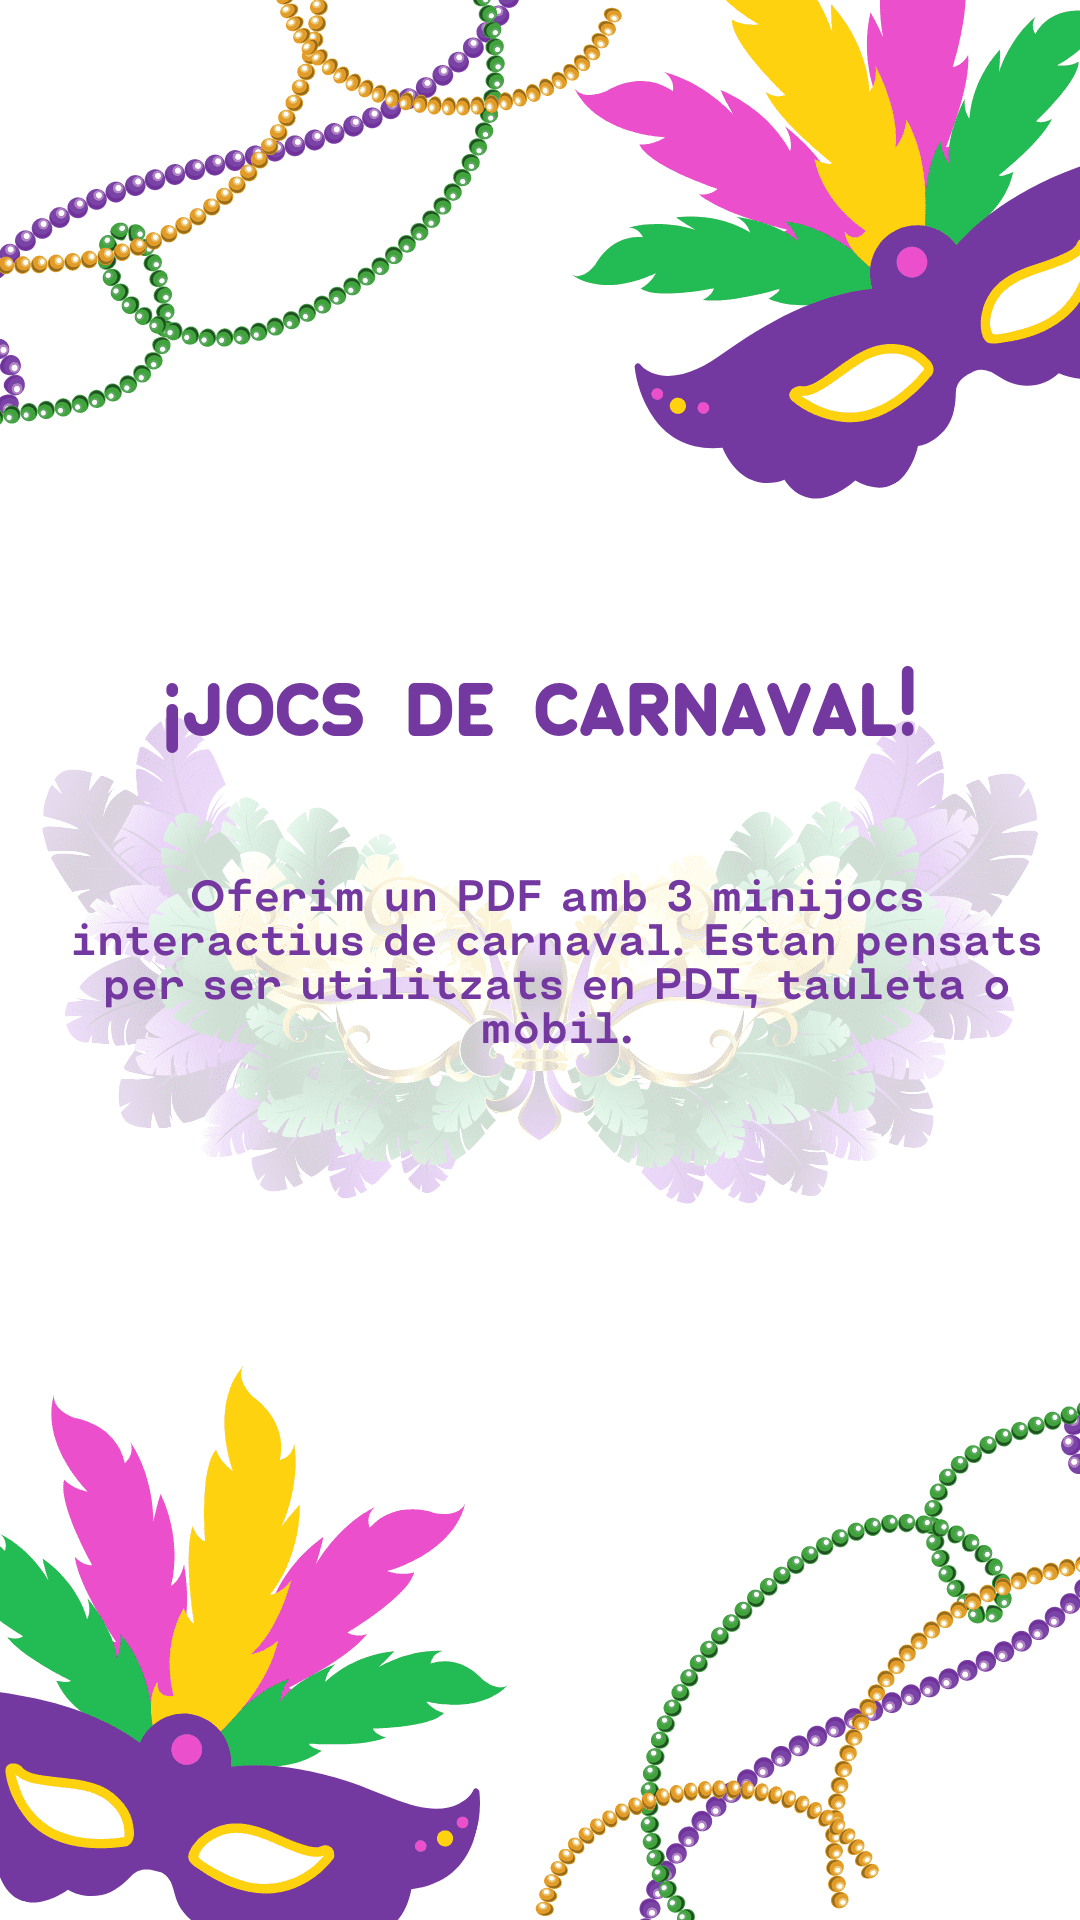 JOCS DE CARNAVAL